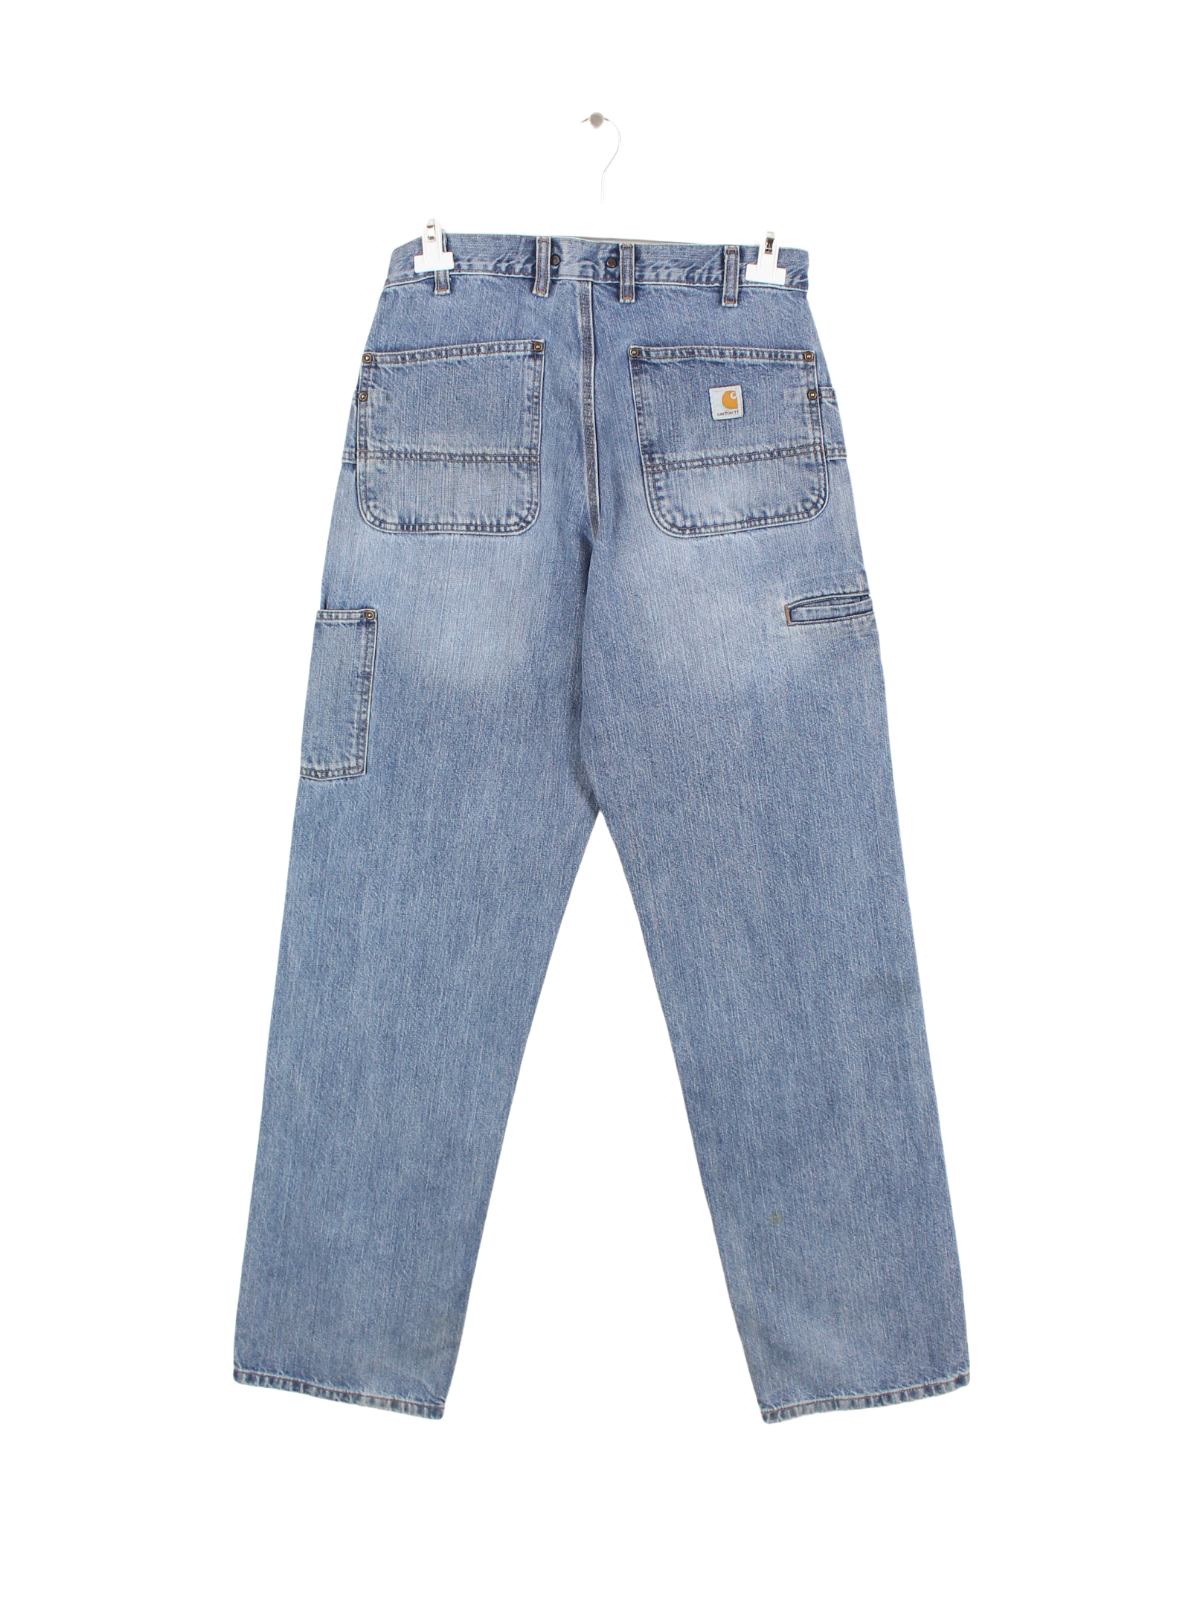 Carhartt Carpenter Jeans Blau W32 L36